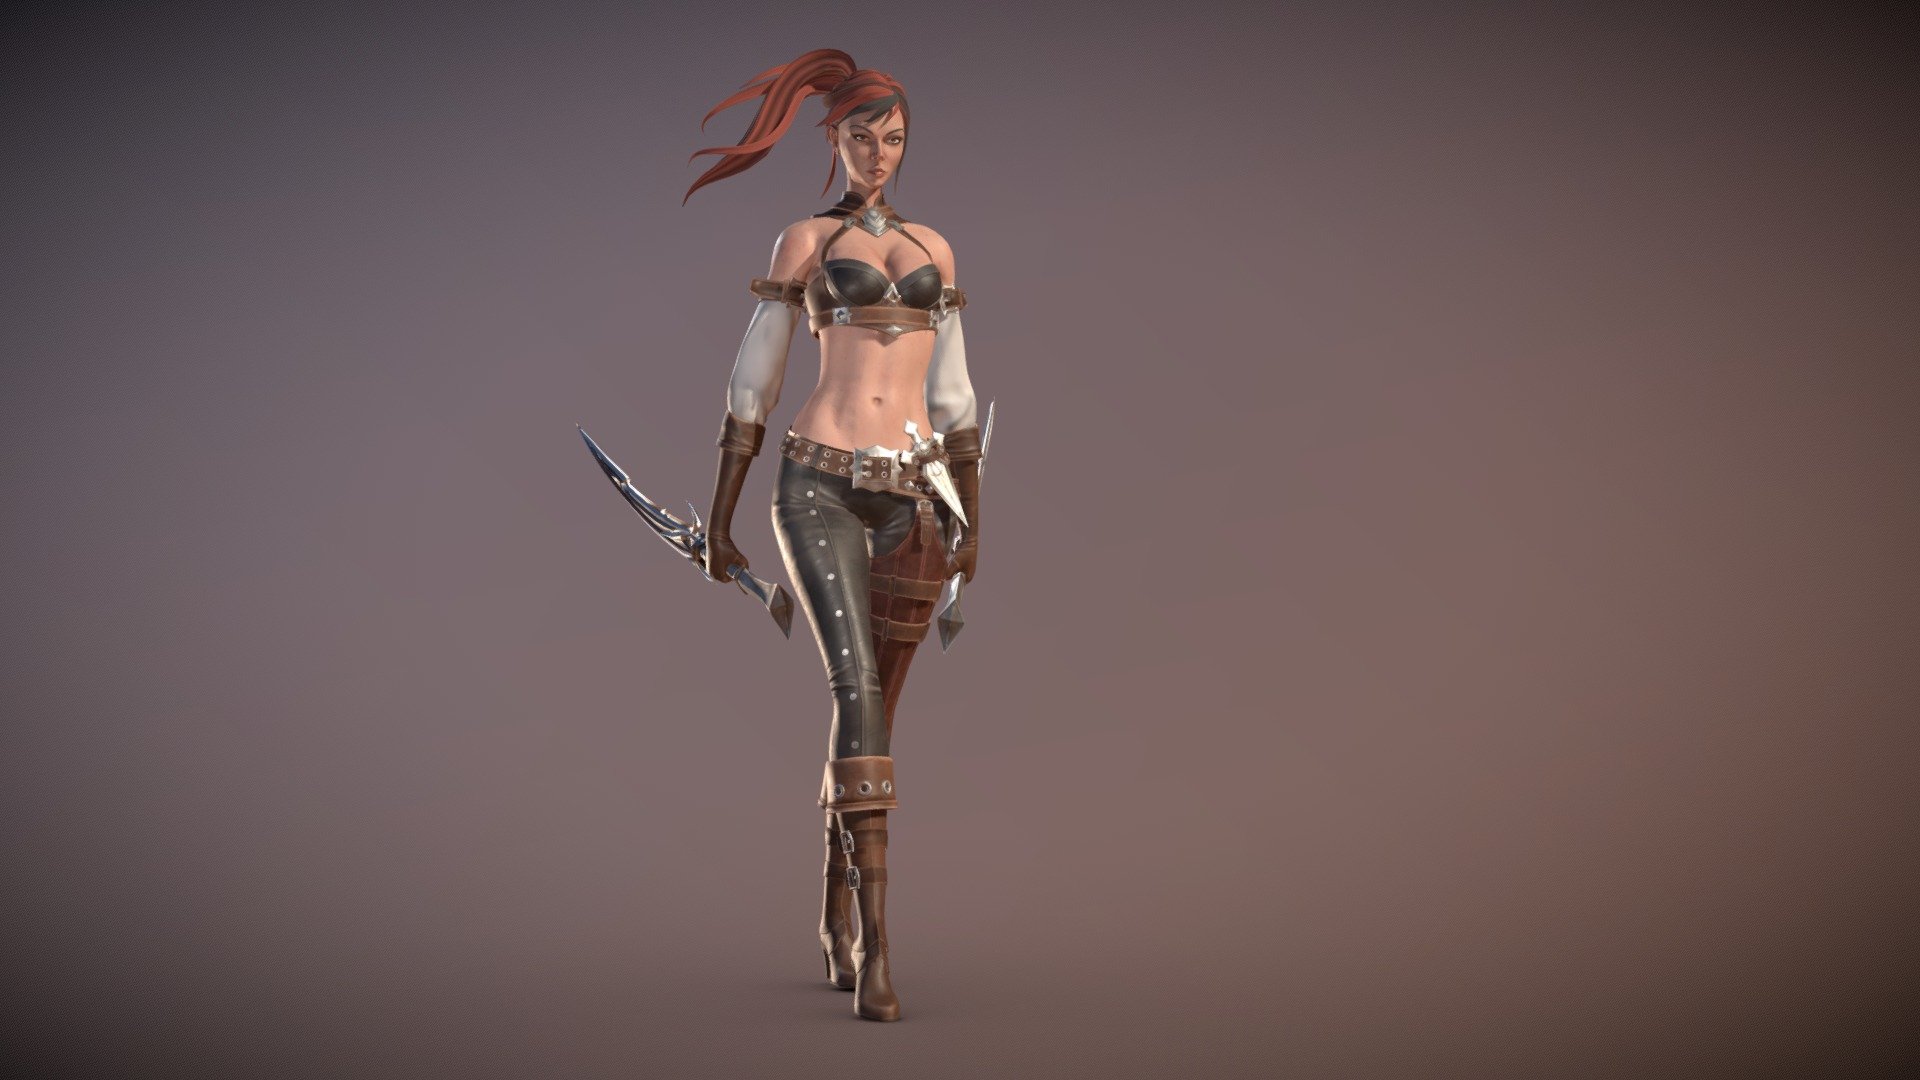 Lowpoly assassin girl character - Danger Girl - 3D model by denis.shurduk 3d model